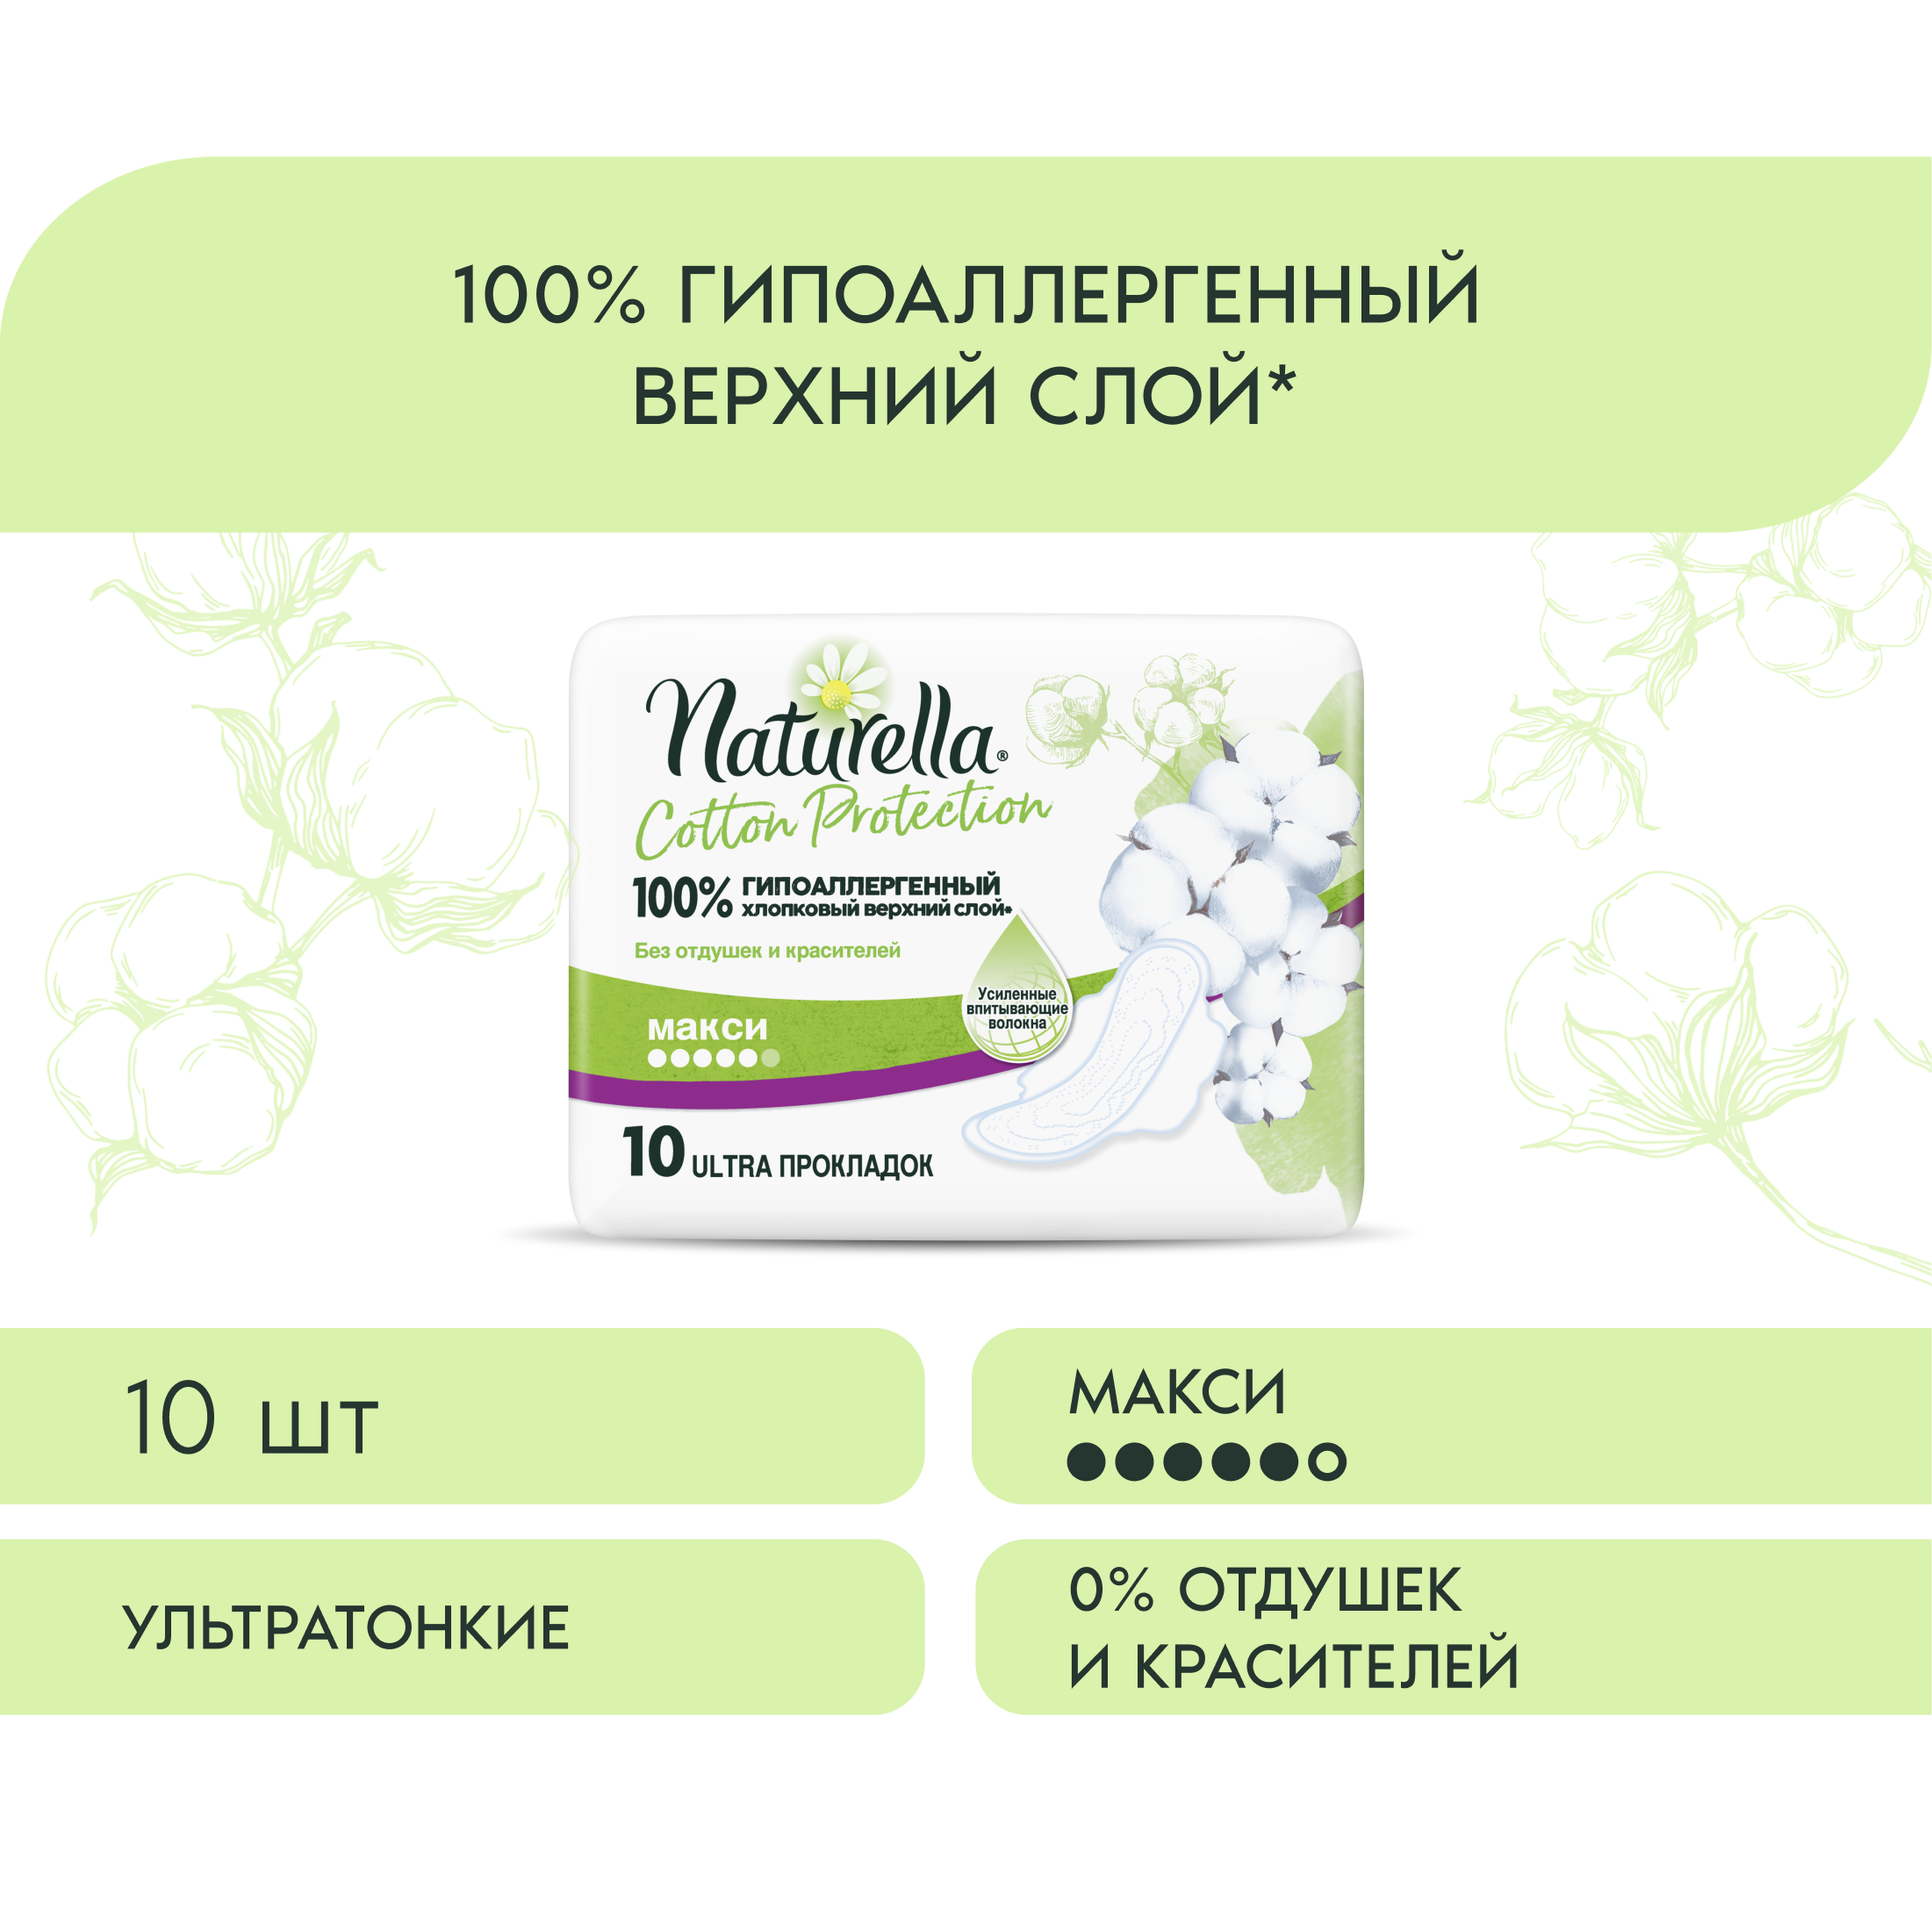 Женские гигиенические прокладки с крылышками Naturella Cotton Protection Maxi, 10 шт.